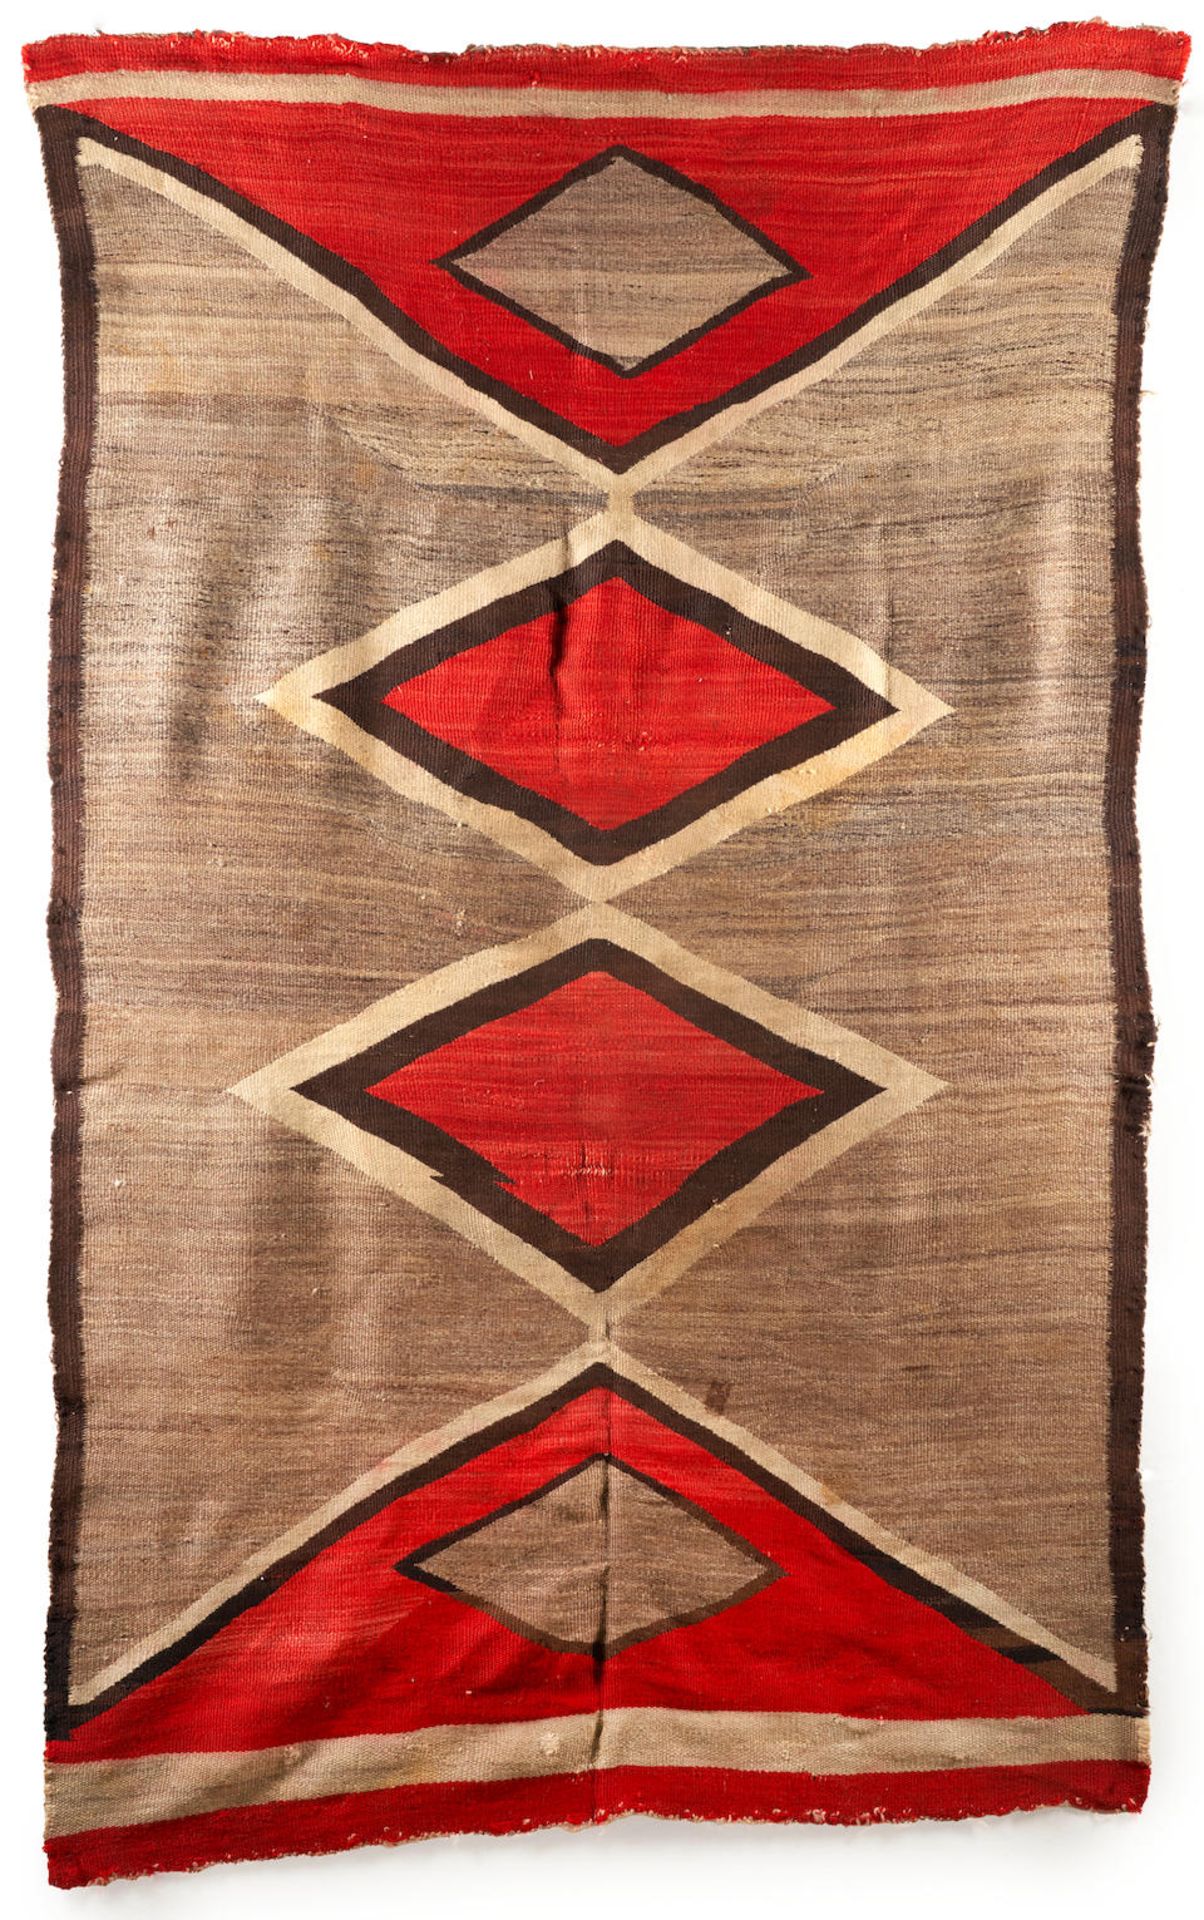 A Diné (Navajo) rug 86 x 54 in.